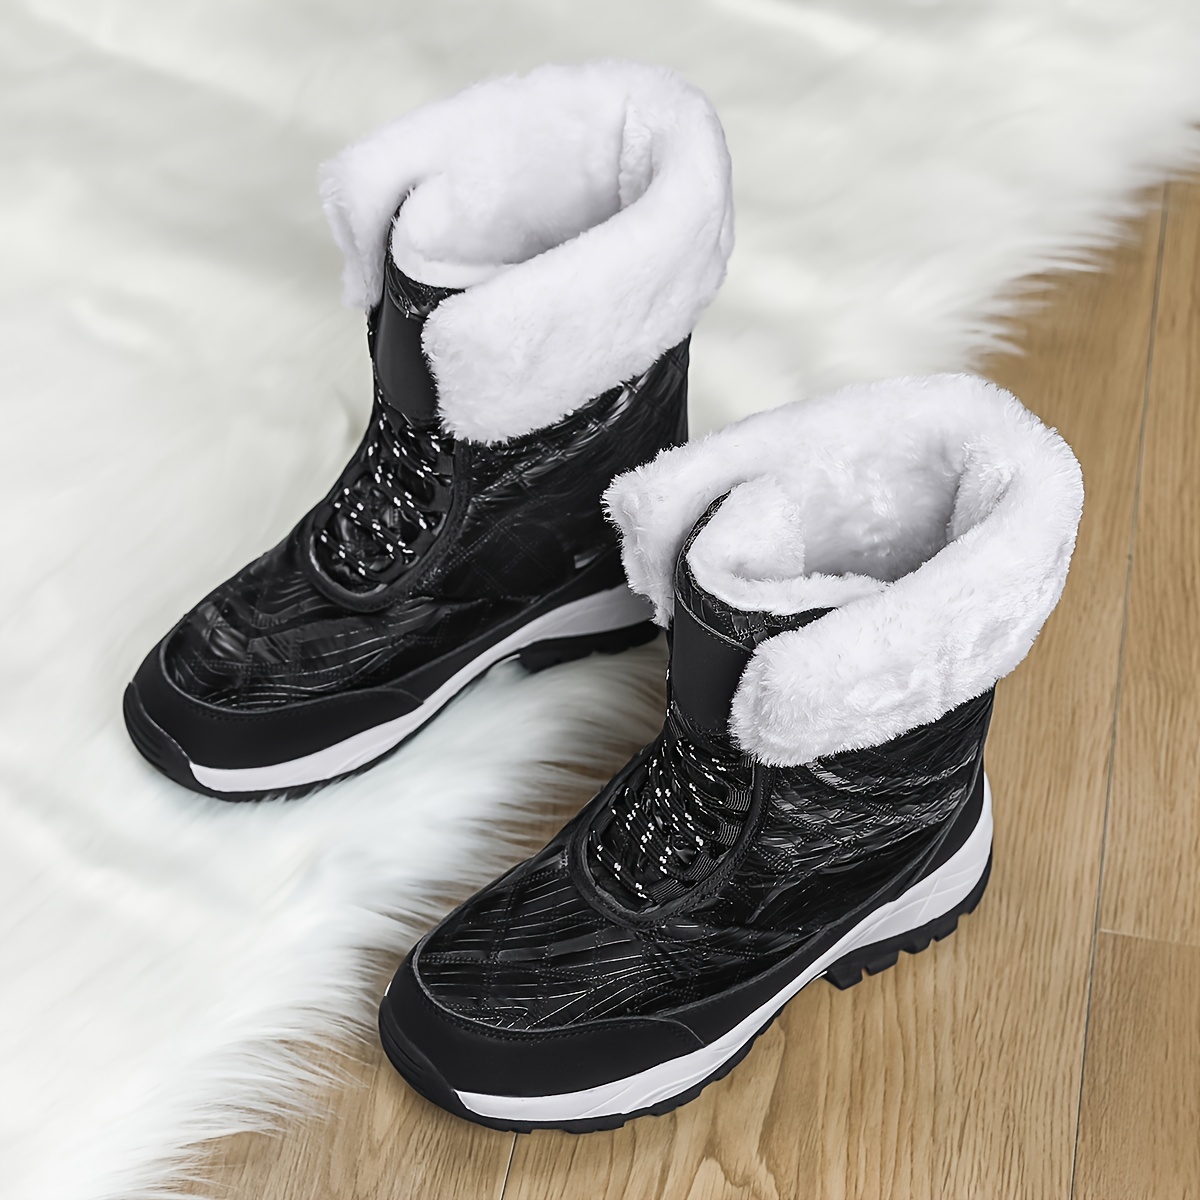 Botines De Mujer Zapatos De Plataforma Botas Invierno Calzado Para Nieve Y  Agua